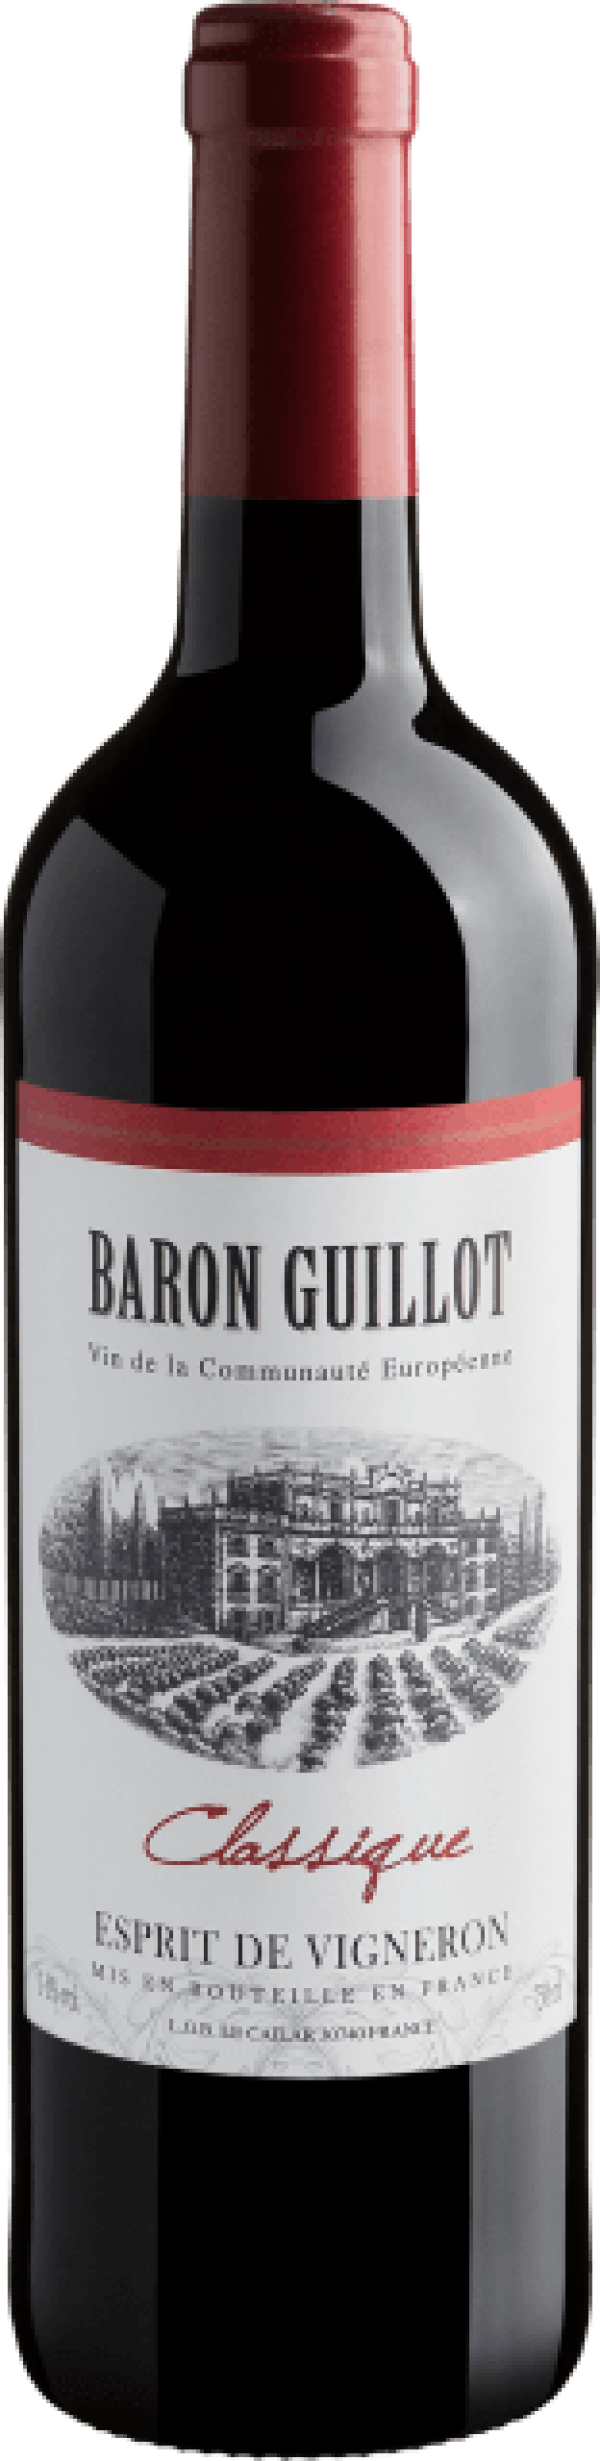 Baron Guillot Classique Esprit de Vigneron 2020